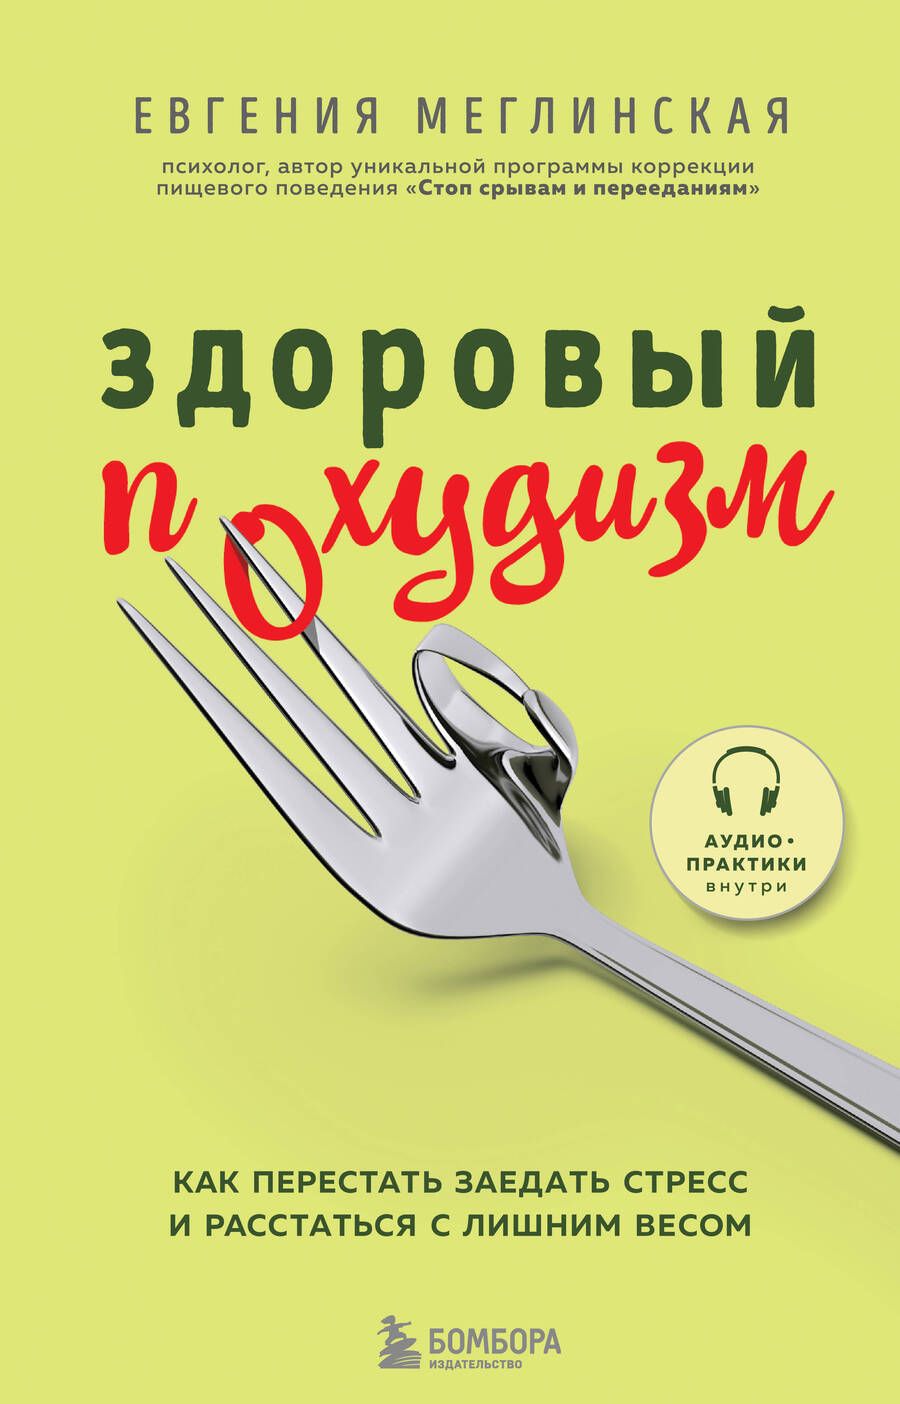 Обложка книги "Евгения Меглинская: Здоровый похудизм. Как перестать заедать стресс и расстаться с лишним весом"